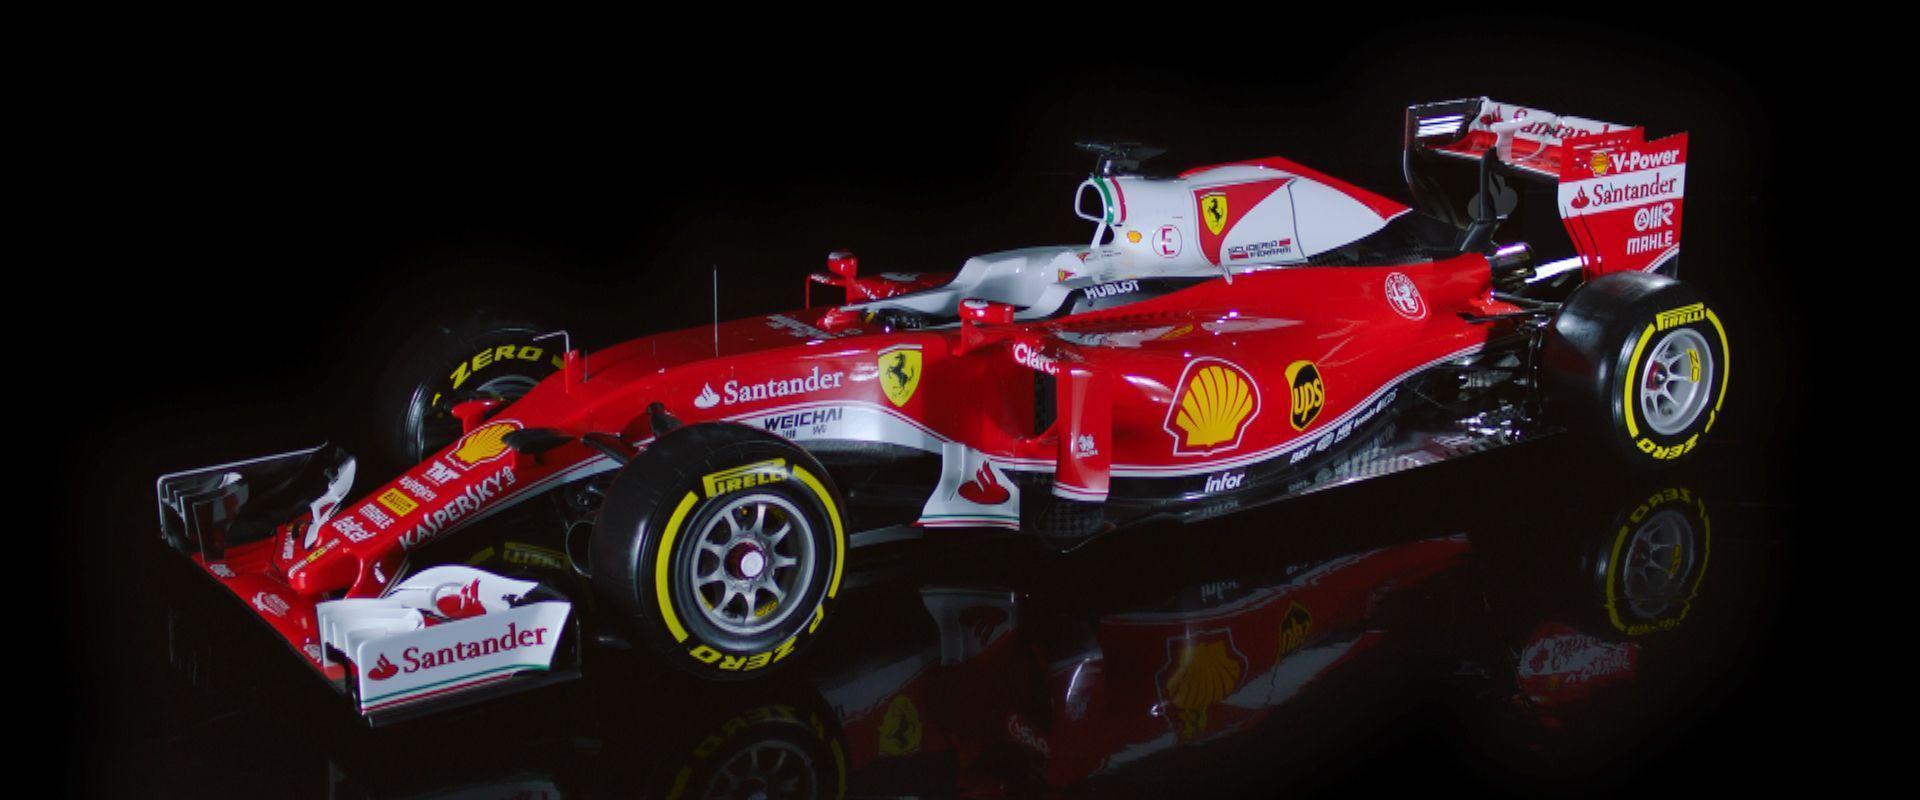 In Picture: Scuderia Ferrari&;s SF16 H Launch